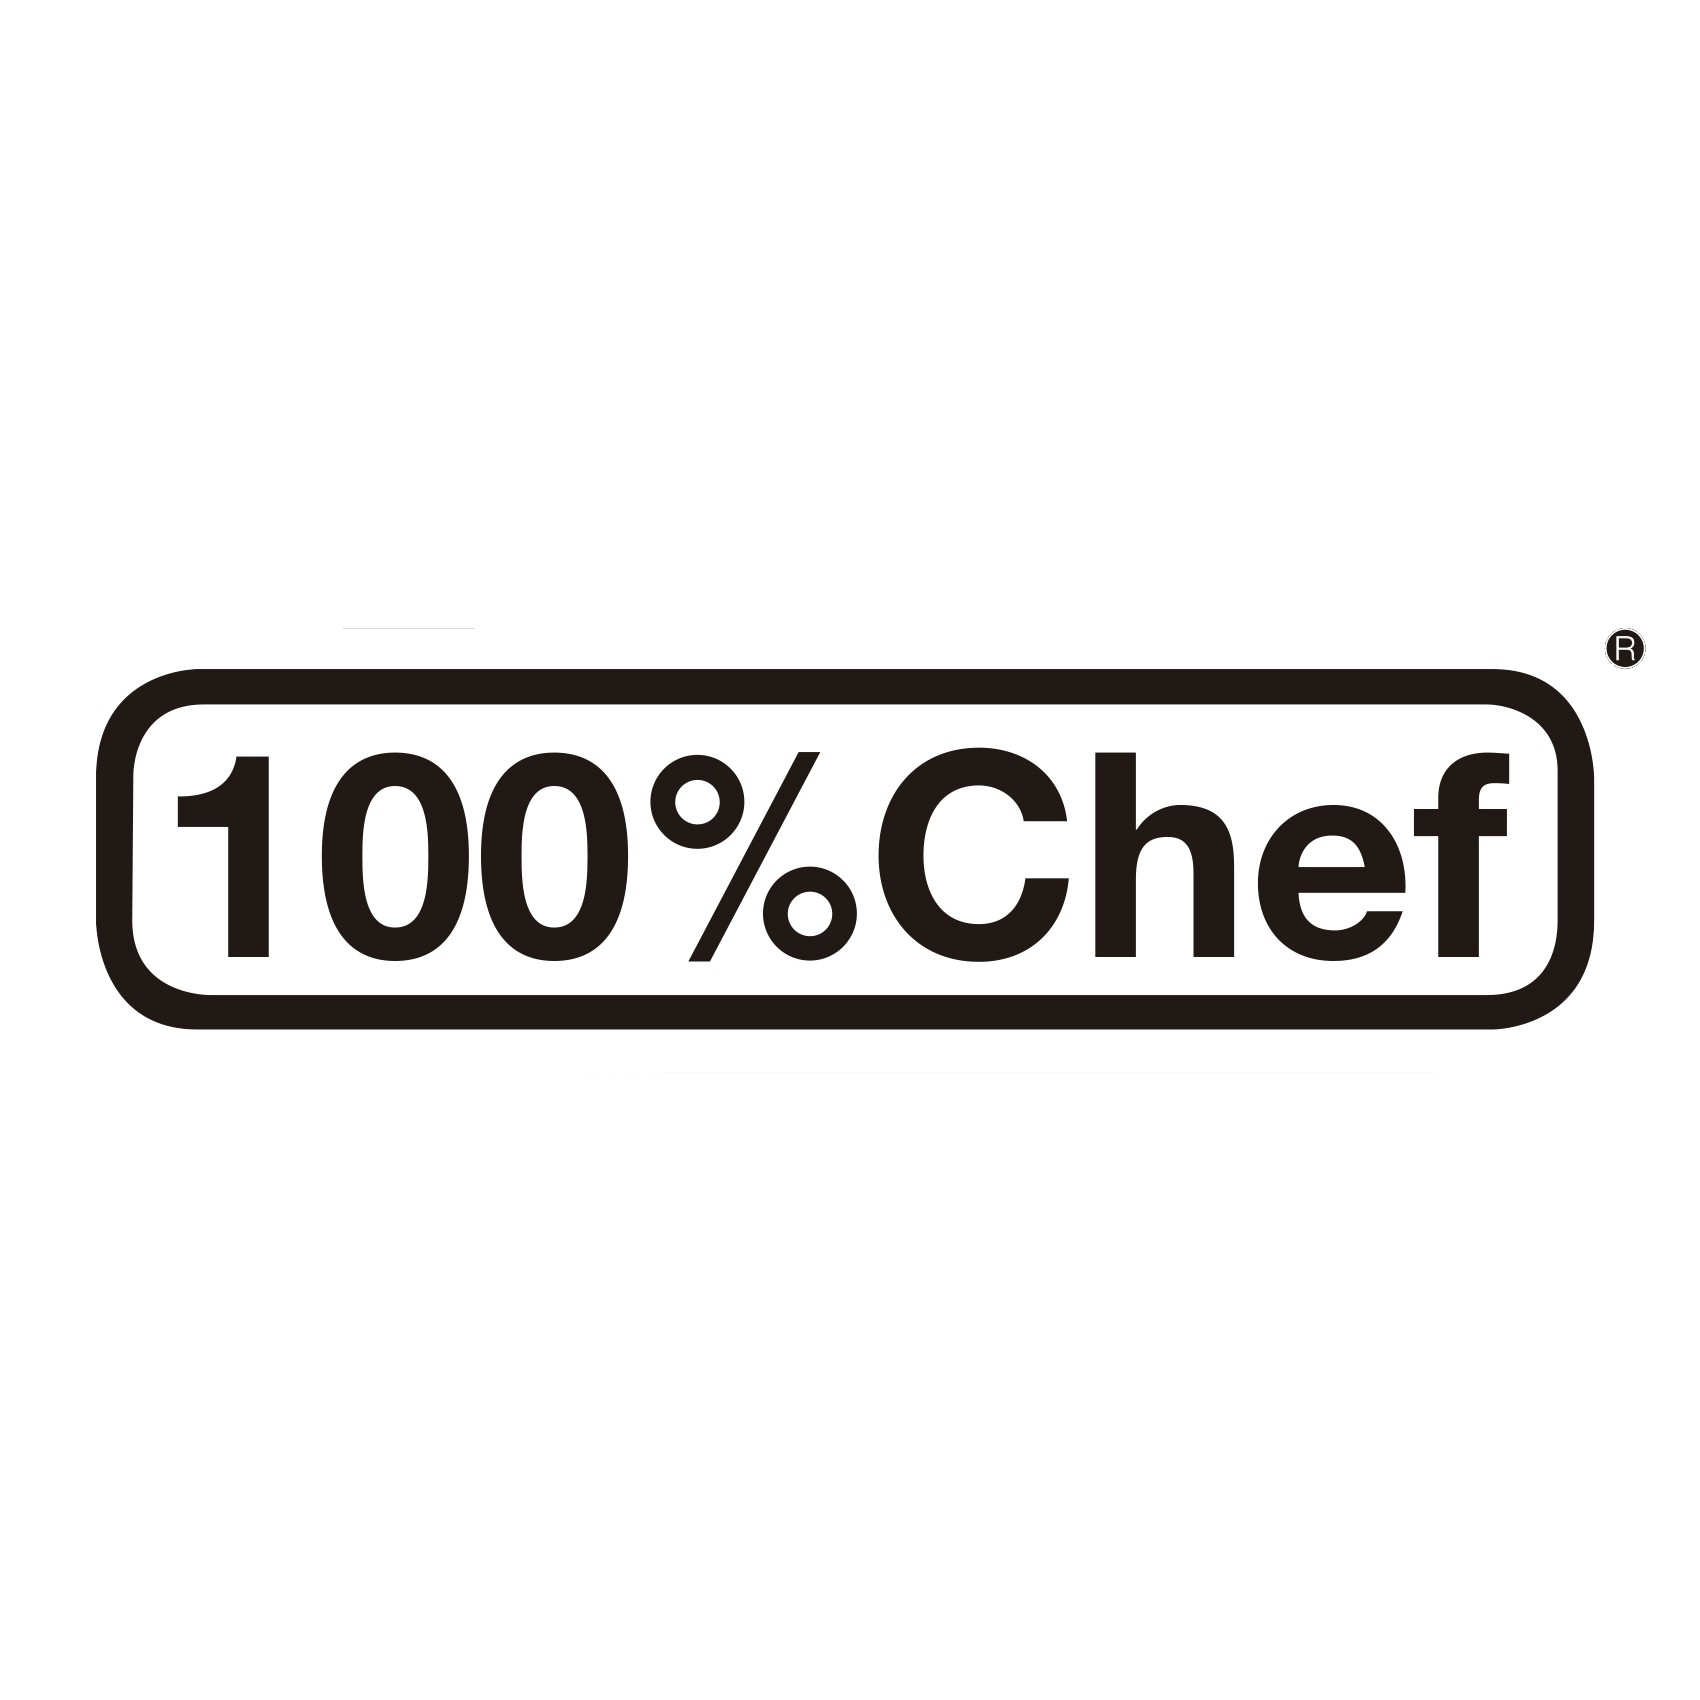 100%Chef